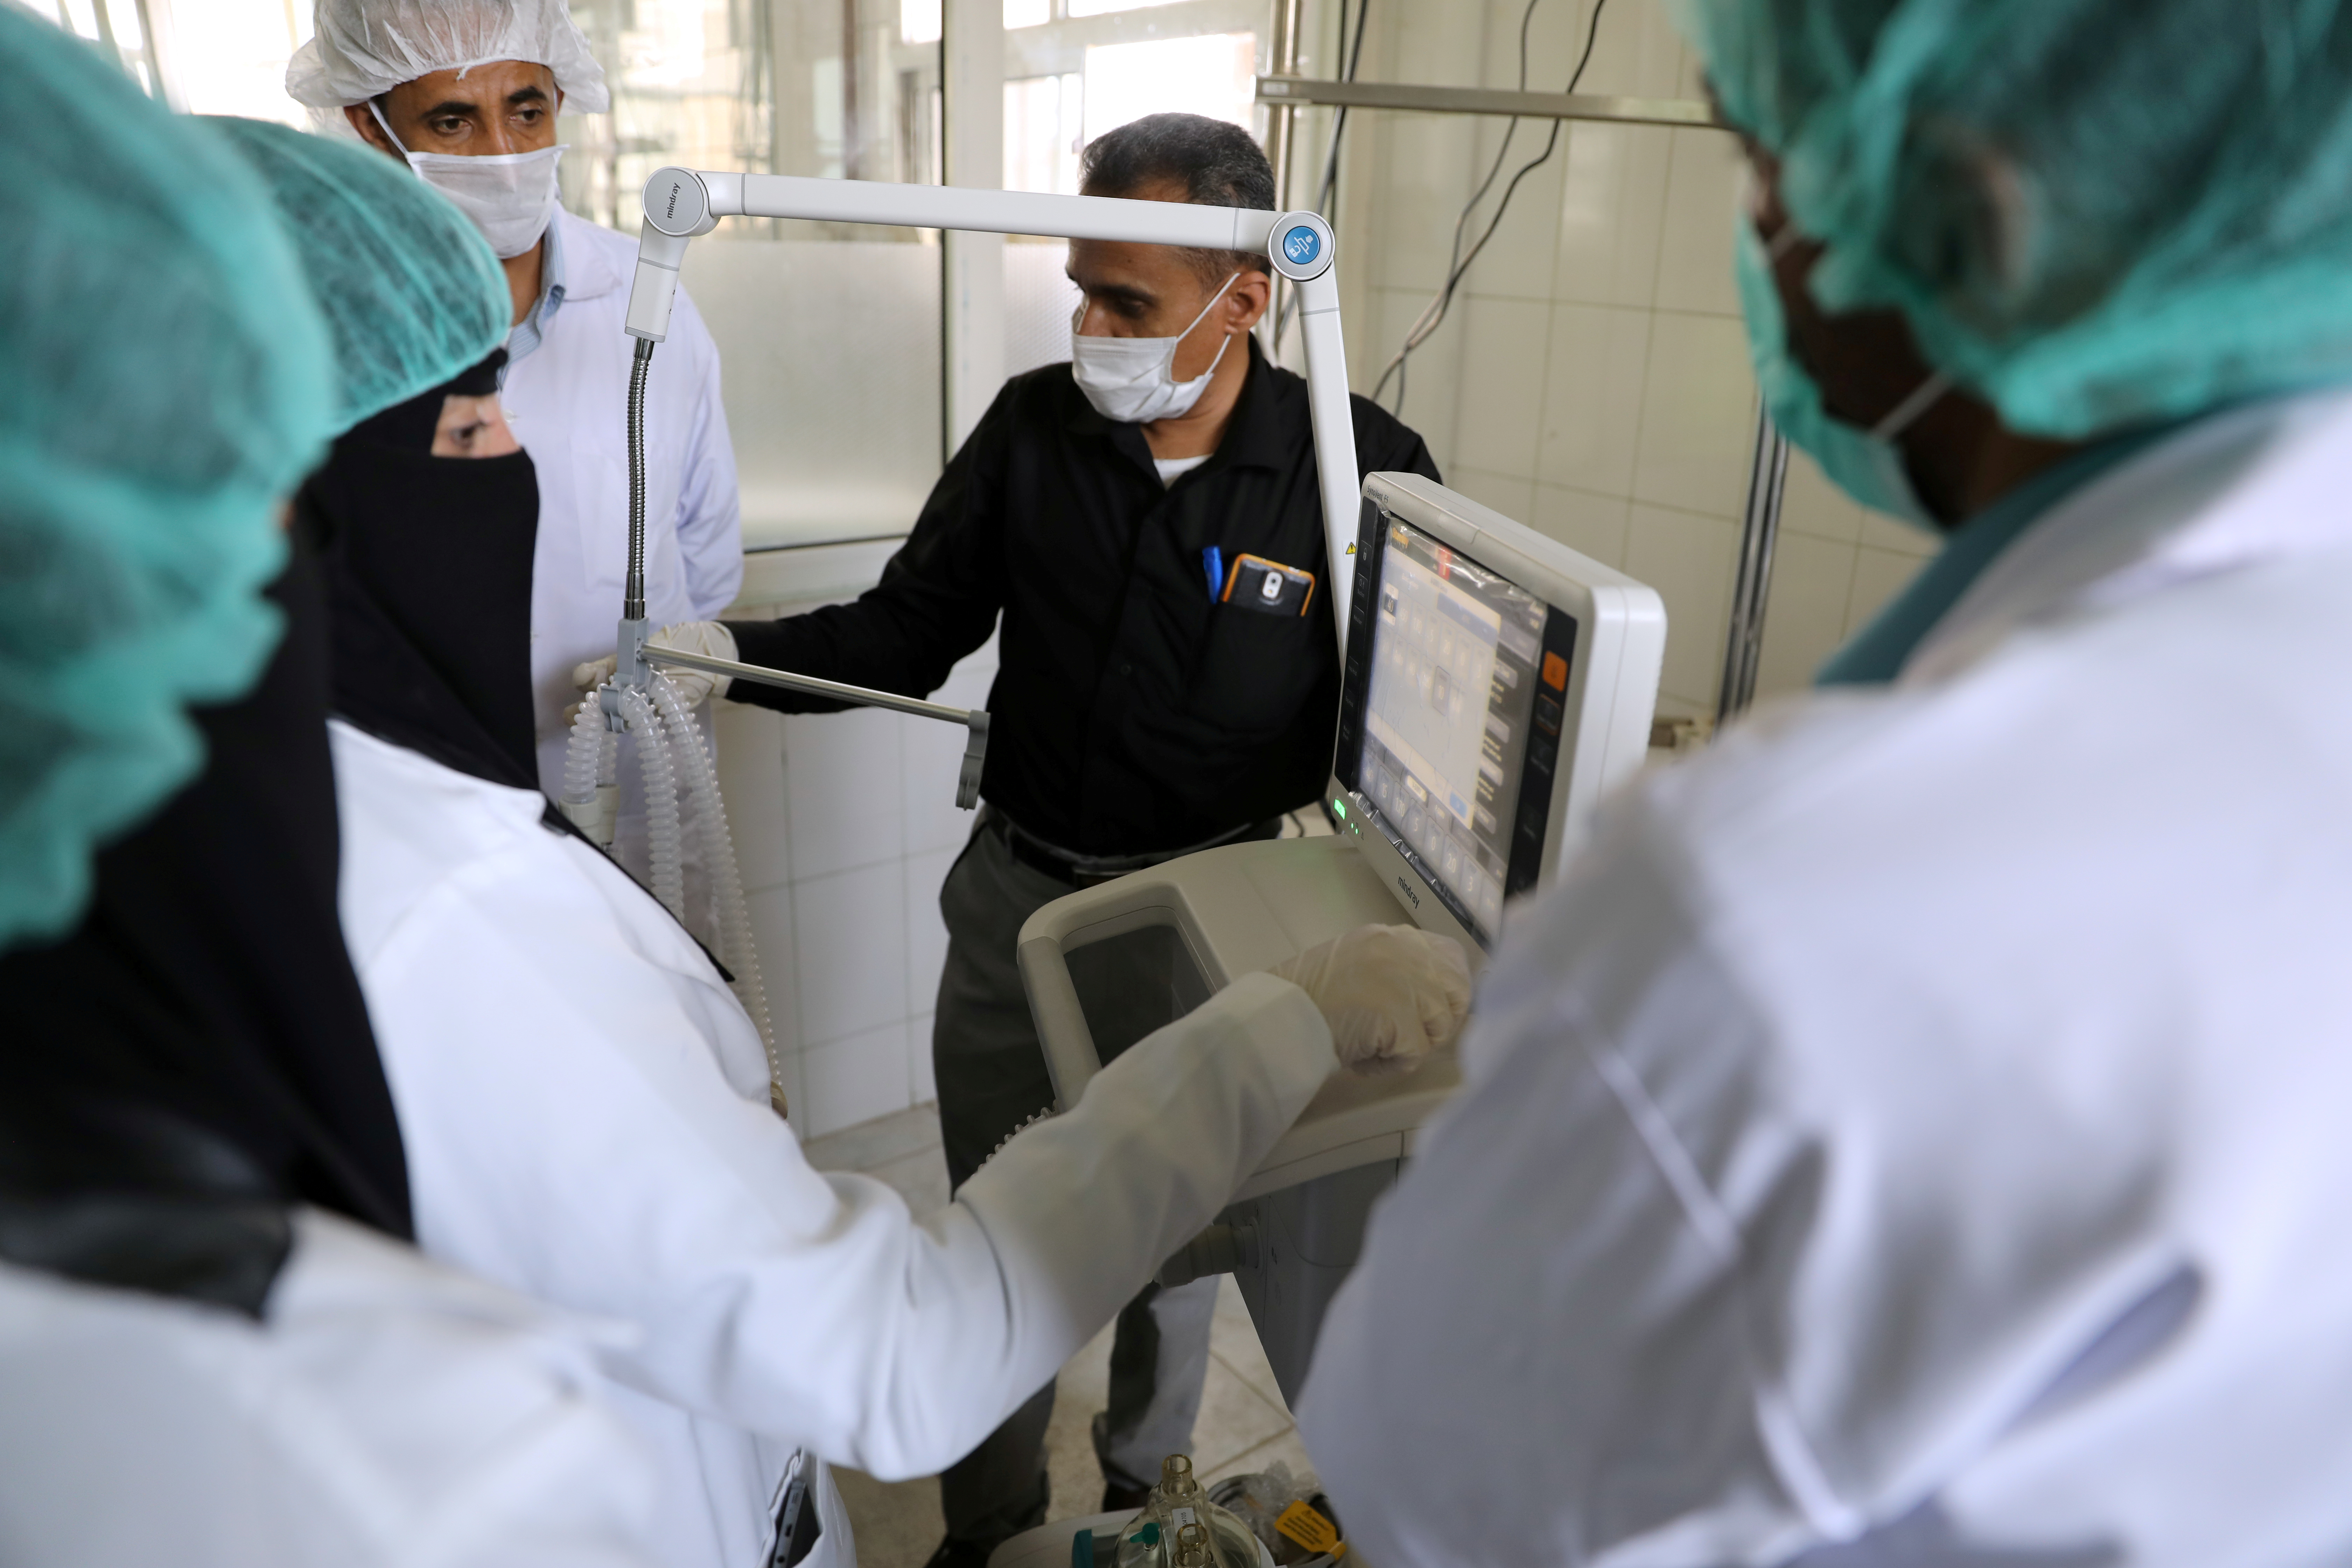 La ONU dice “no tener recursos” para ayudar en situación en Yemen, hundida en la hambruna en plena pandemia